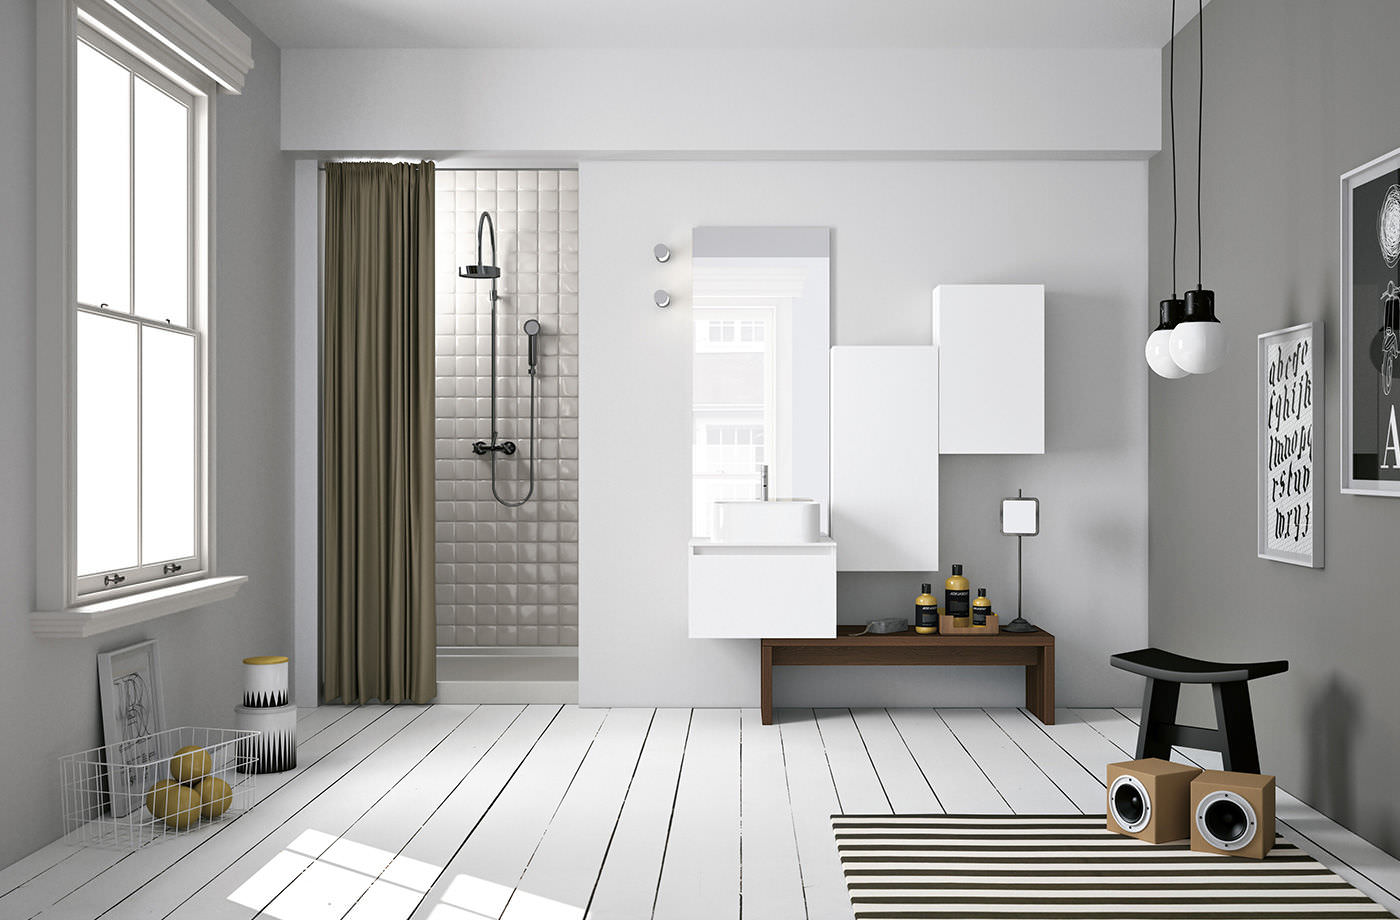 Ванная комната в скандинавском стиле (60 фото): дизайн интерьера, идеи для ремонта